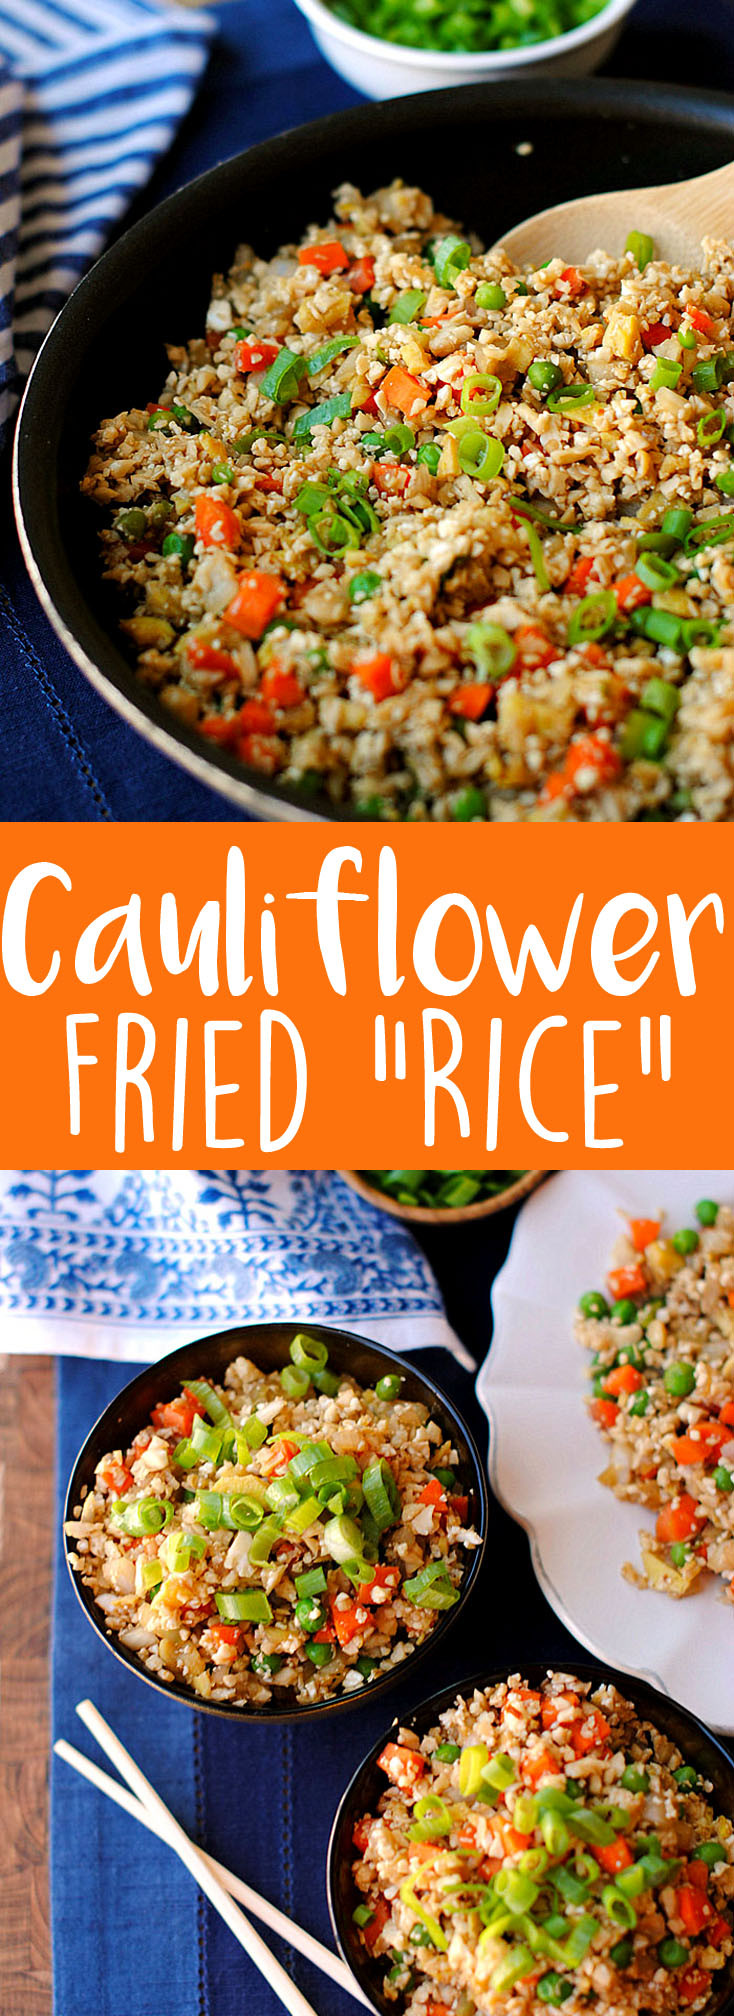 Healthy Cauliflower Recipes
 cauliflower fried rice healthy